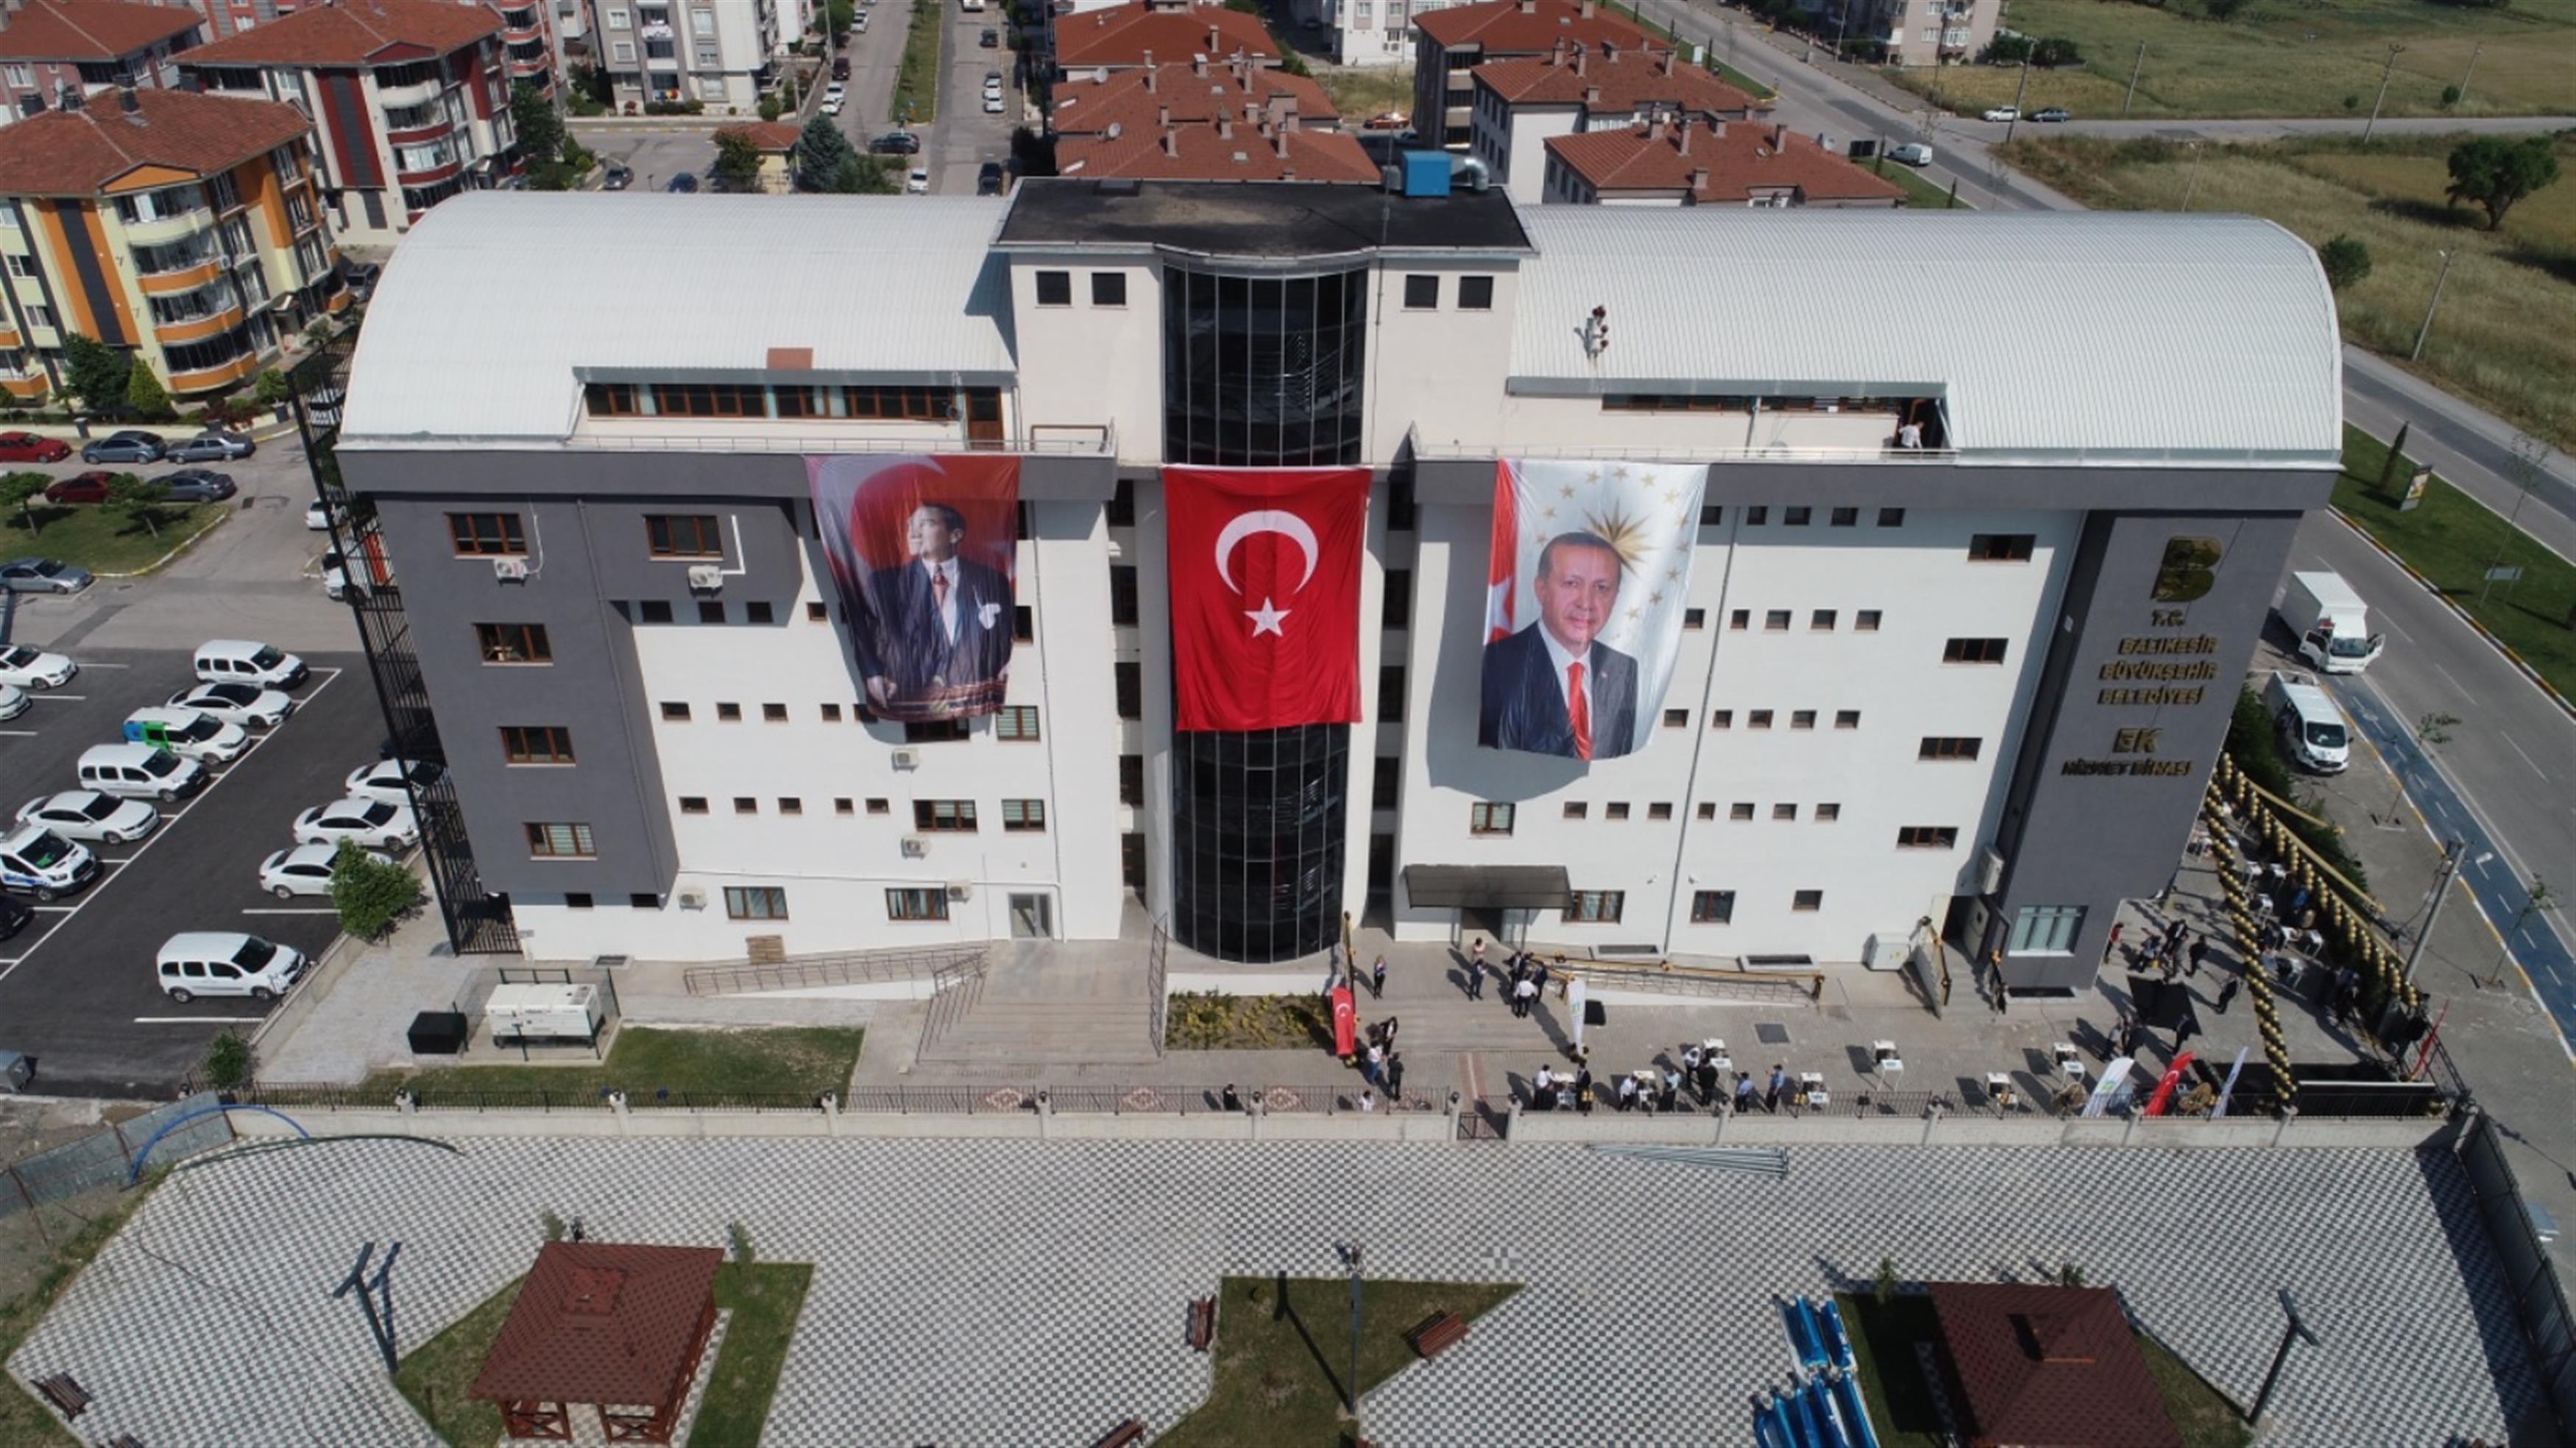 Balıkesir Büyükşehir Belediyesi, şehir merkezinde dağınık halde bulunan birimlerini Paşaalanı Mahallesi’nde açılan Ek Hizmet Binası'nda topladı.